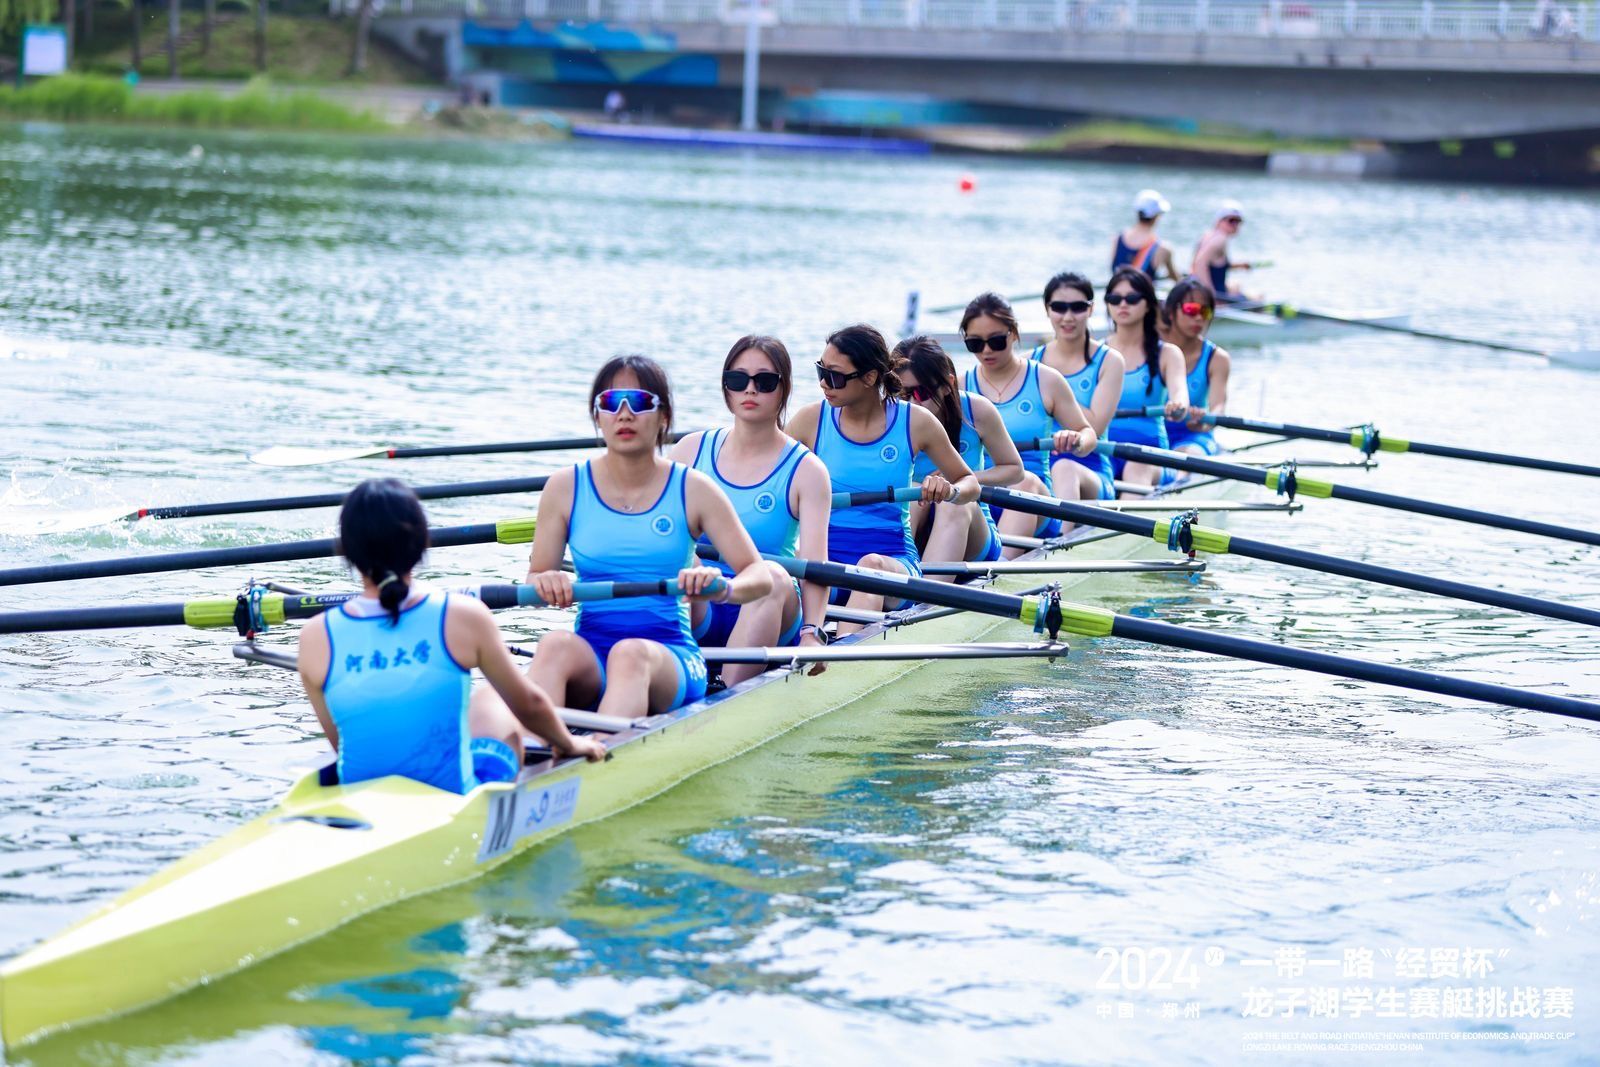 郑州市人民政府主办,来自八个国家和地区30多个高校的赛艇运动员及